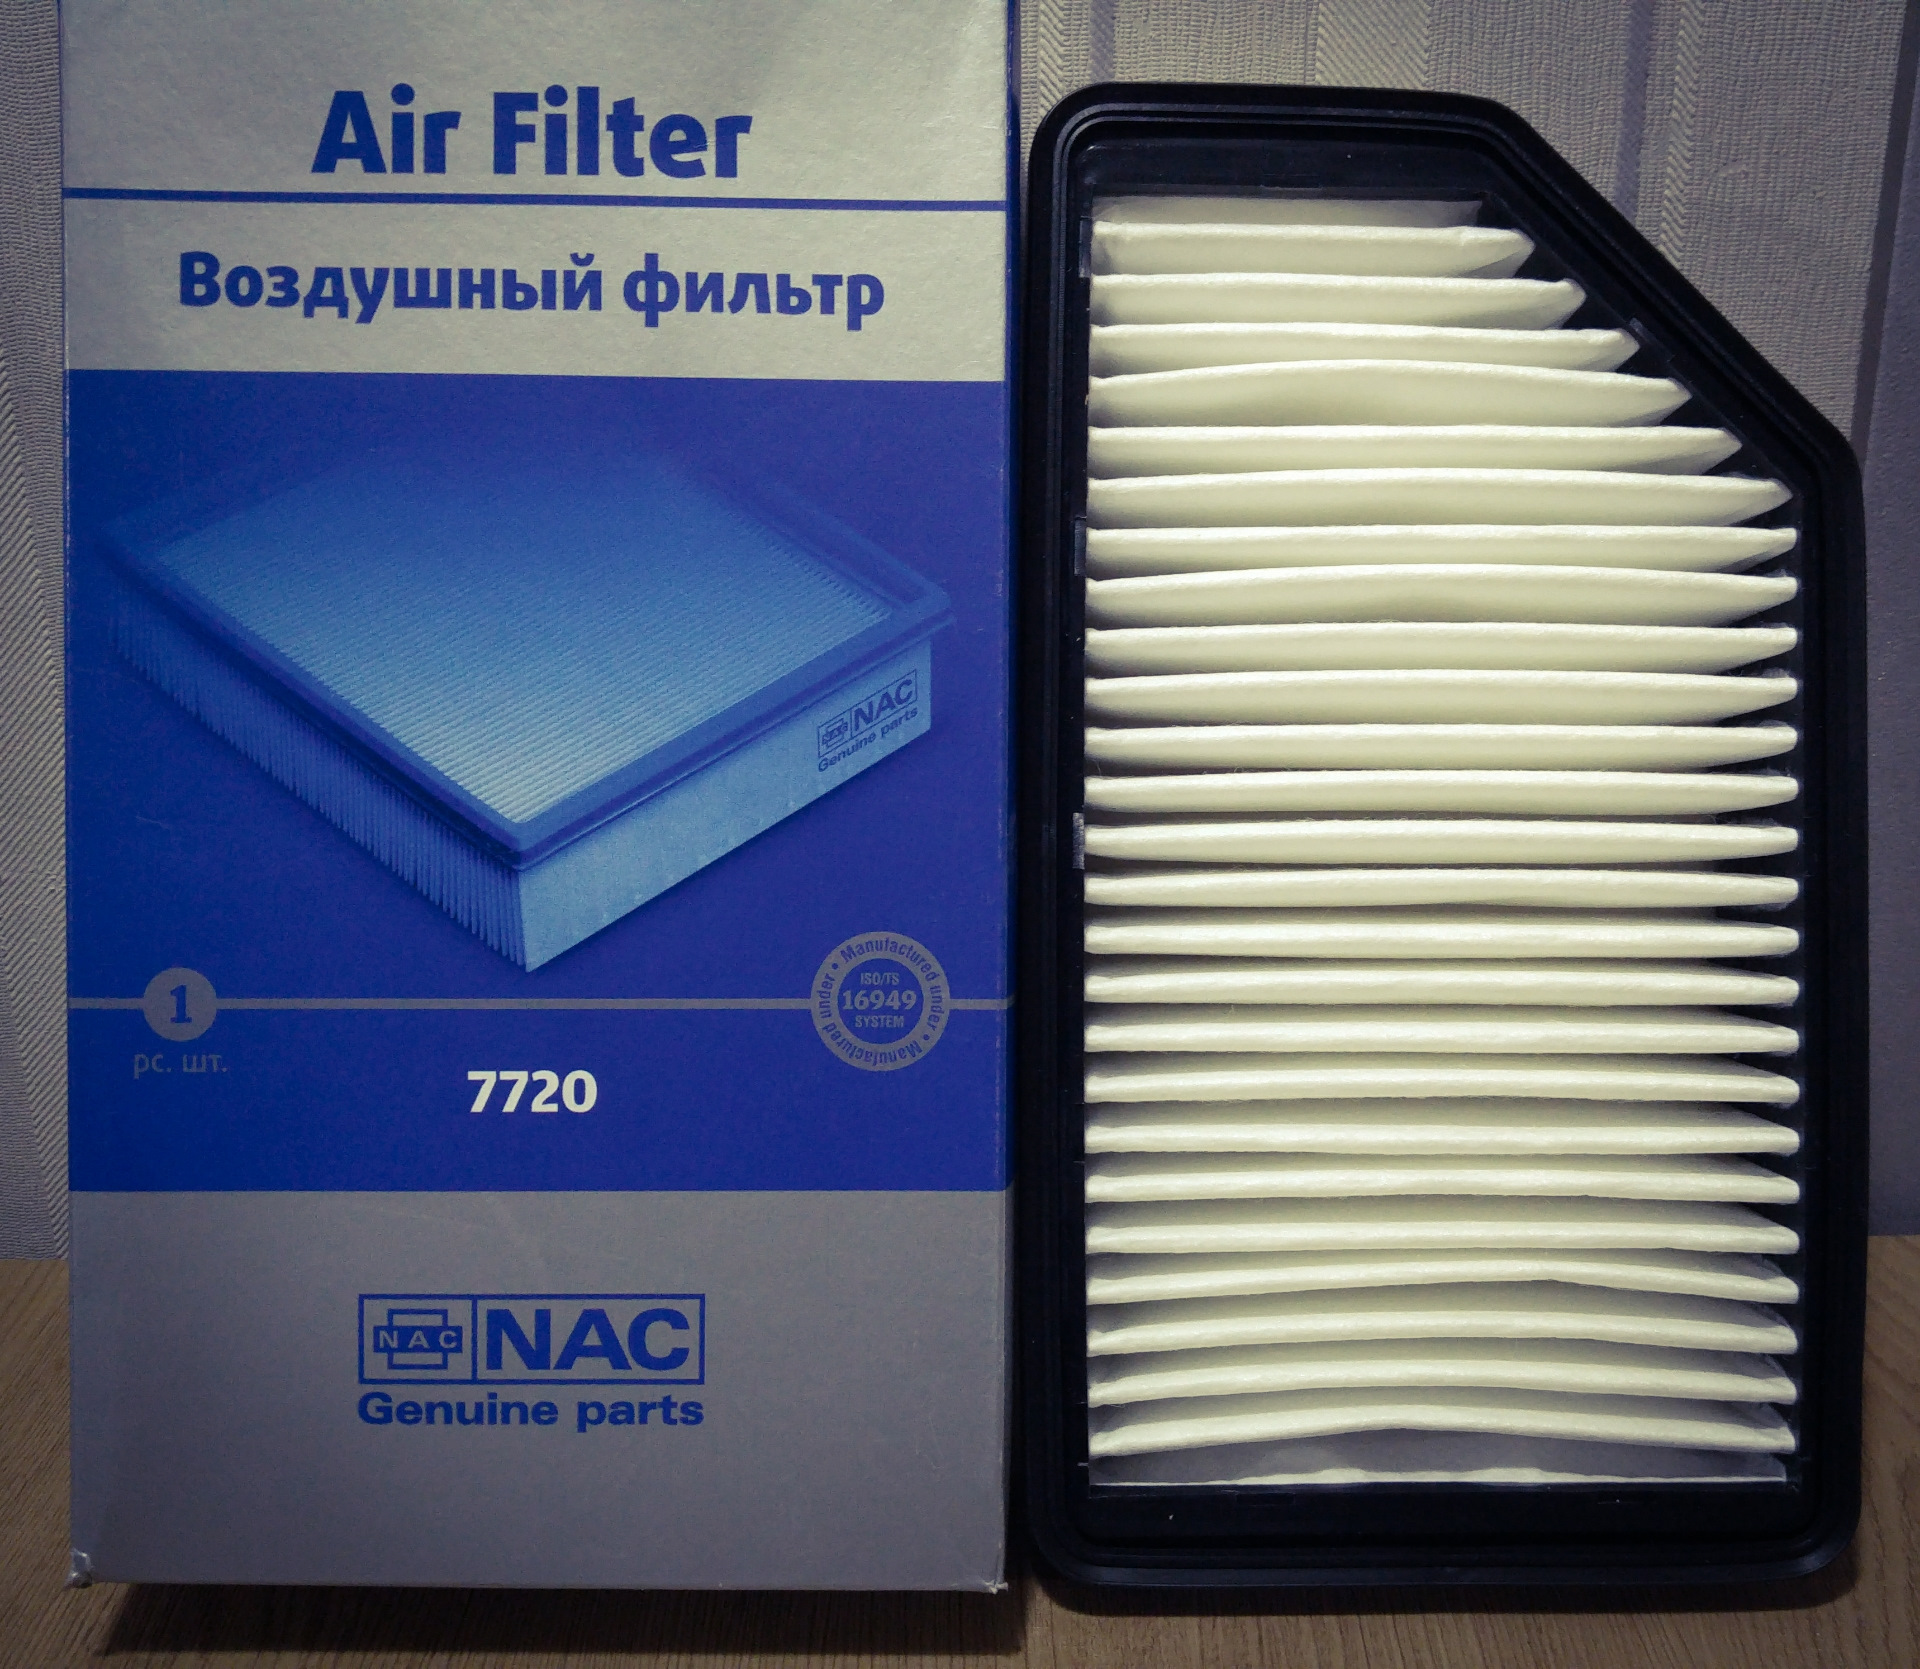 Воздушный фильтр солярис 2. Фильтр воздушный NAC 7720. Фильтр воздушный 7750 NAC. Фильтр воздушный Солярис 2011 1.6. Воздушный фильтр Солярис 1.6 2015.